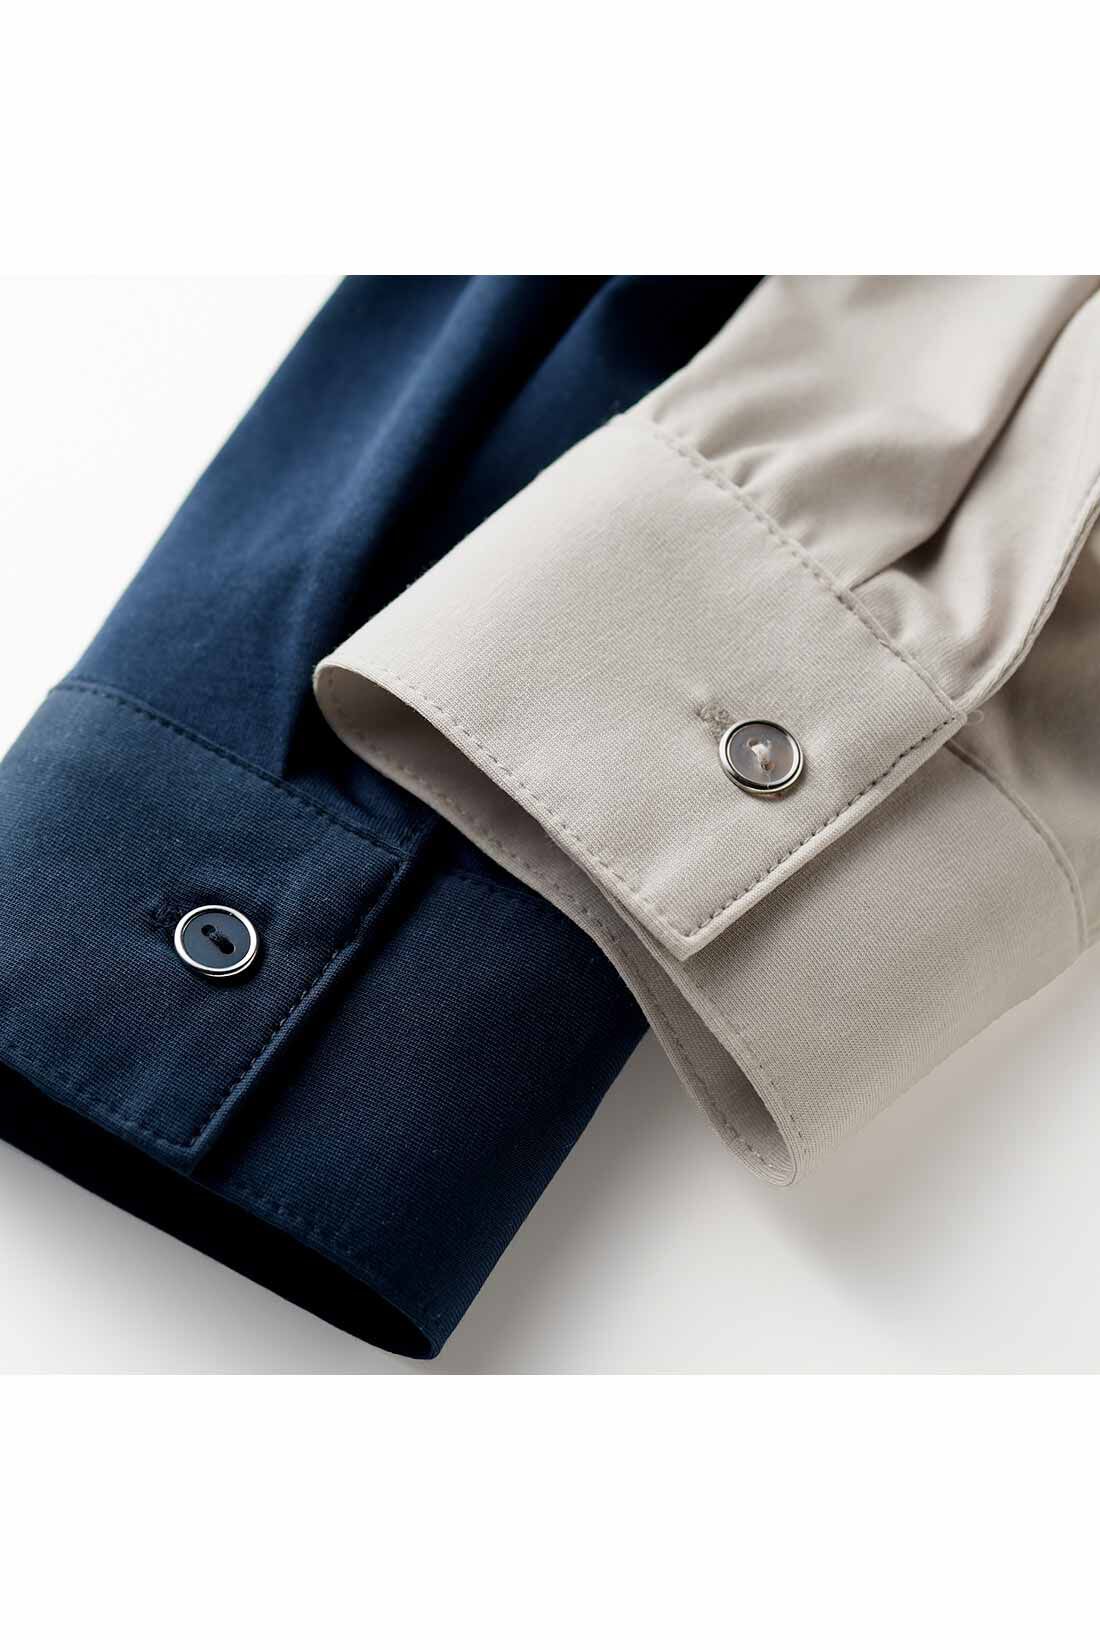 Real Stock|IEDIT[イディット]　らくちんにこなれる　すっきり見えデザインのスキッパー美ノビシャツ〈ネイビー〉|身生地の色に合わせたボタンは、クール感を高めるシルバーのフレームでリッチな印象。